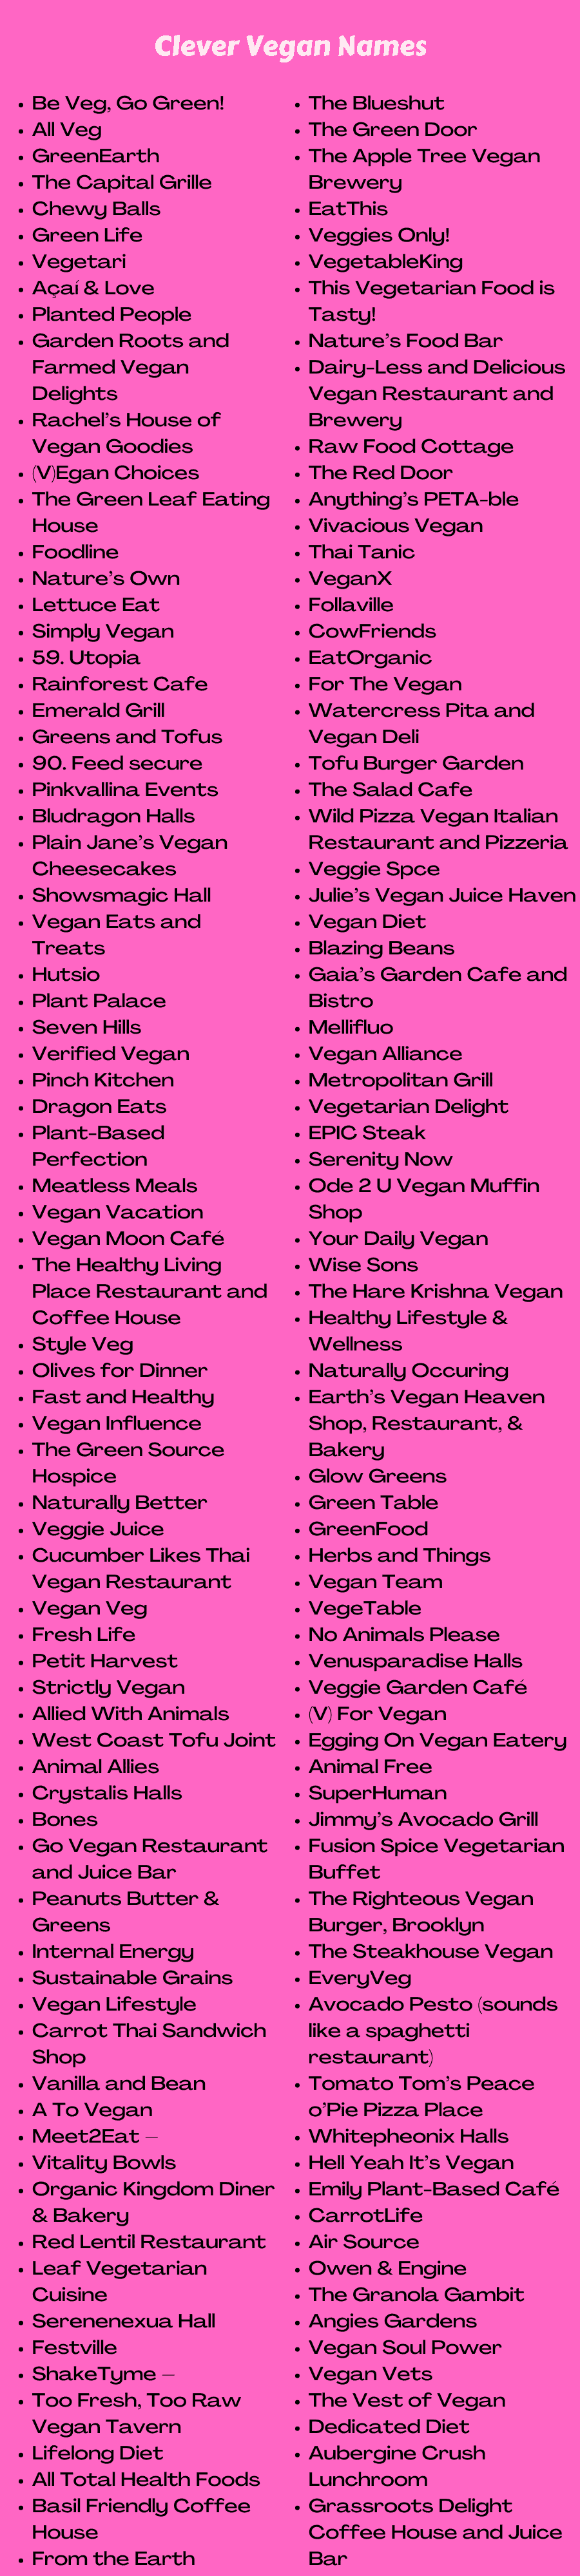 Clever Vegan Names  Vegan Food Names For Instagram - Vegan Food Business Name Ideas